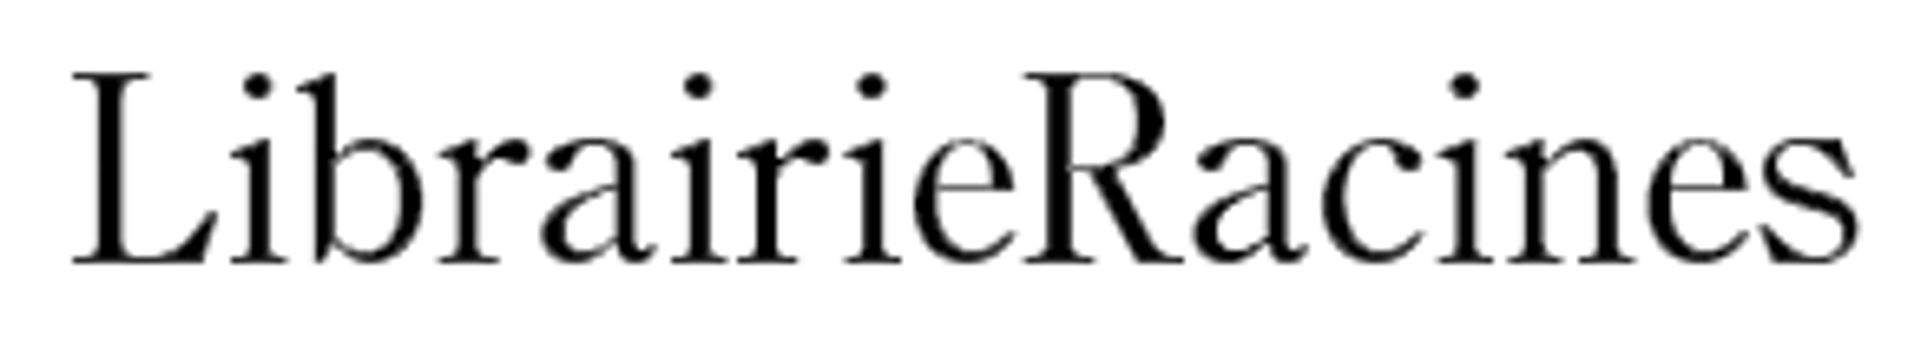 RACINES logo de circulaires